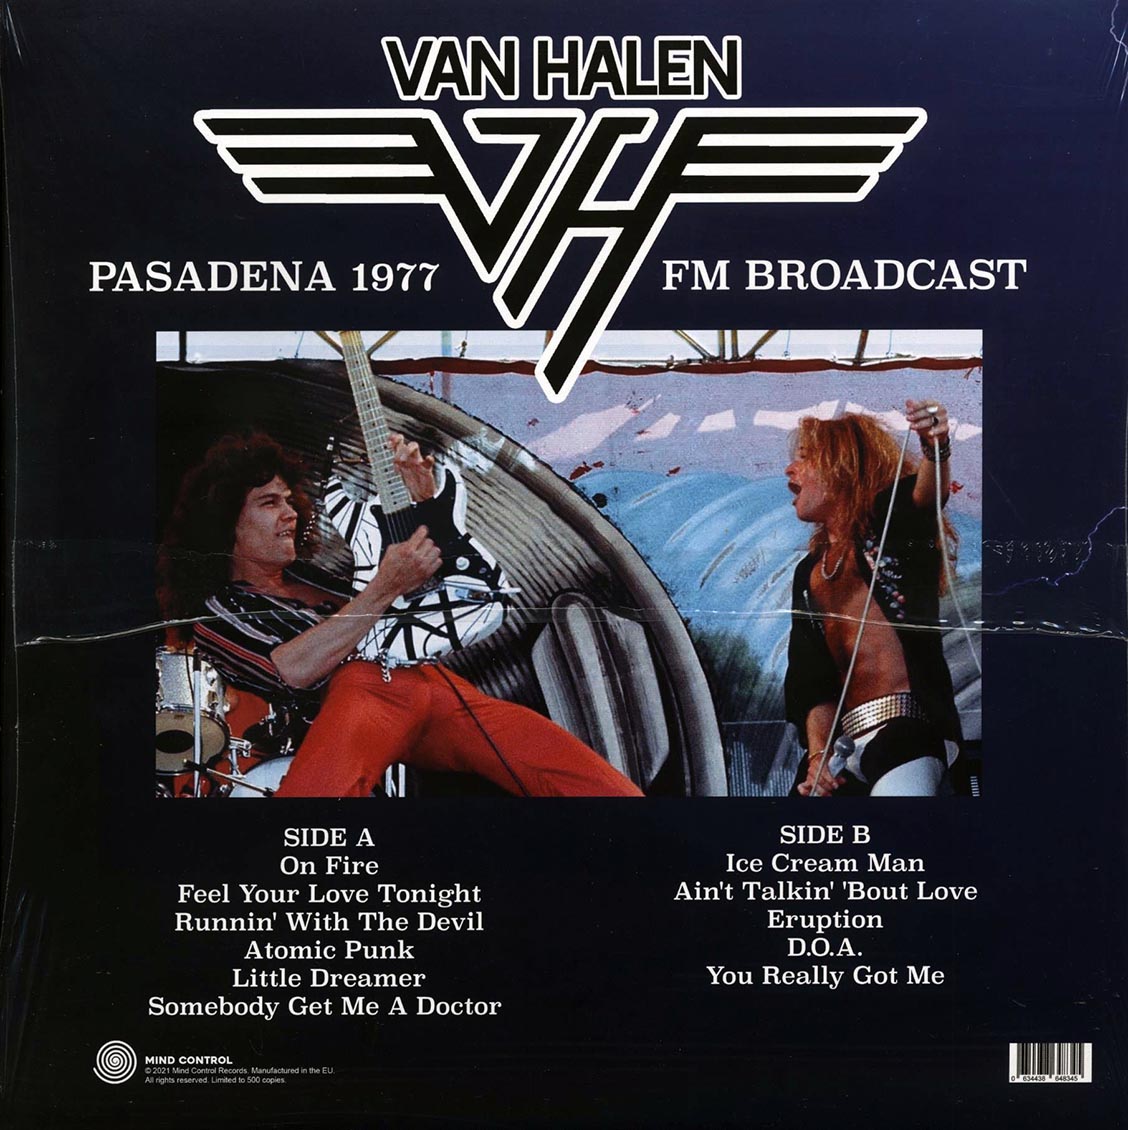 Van Halen - Live In Pasadena 1977 FM Broadcast (ltd. 500 copies made) - Vinyl LP, LP